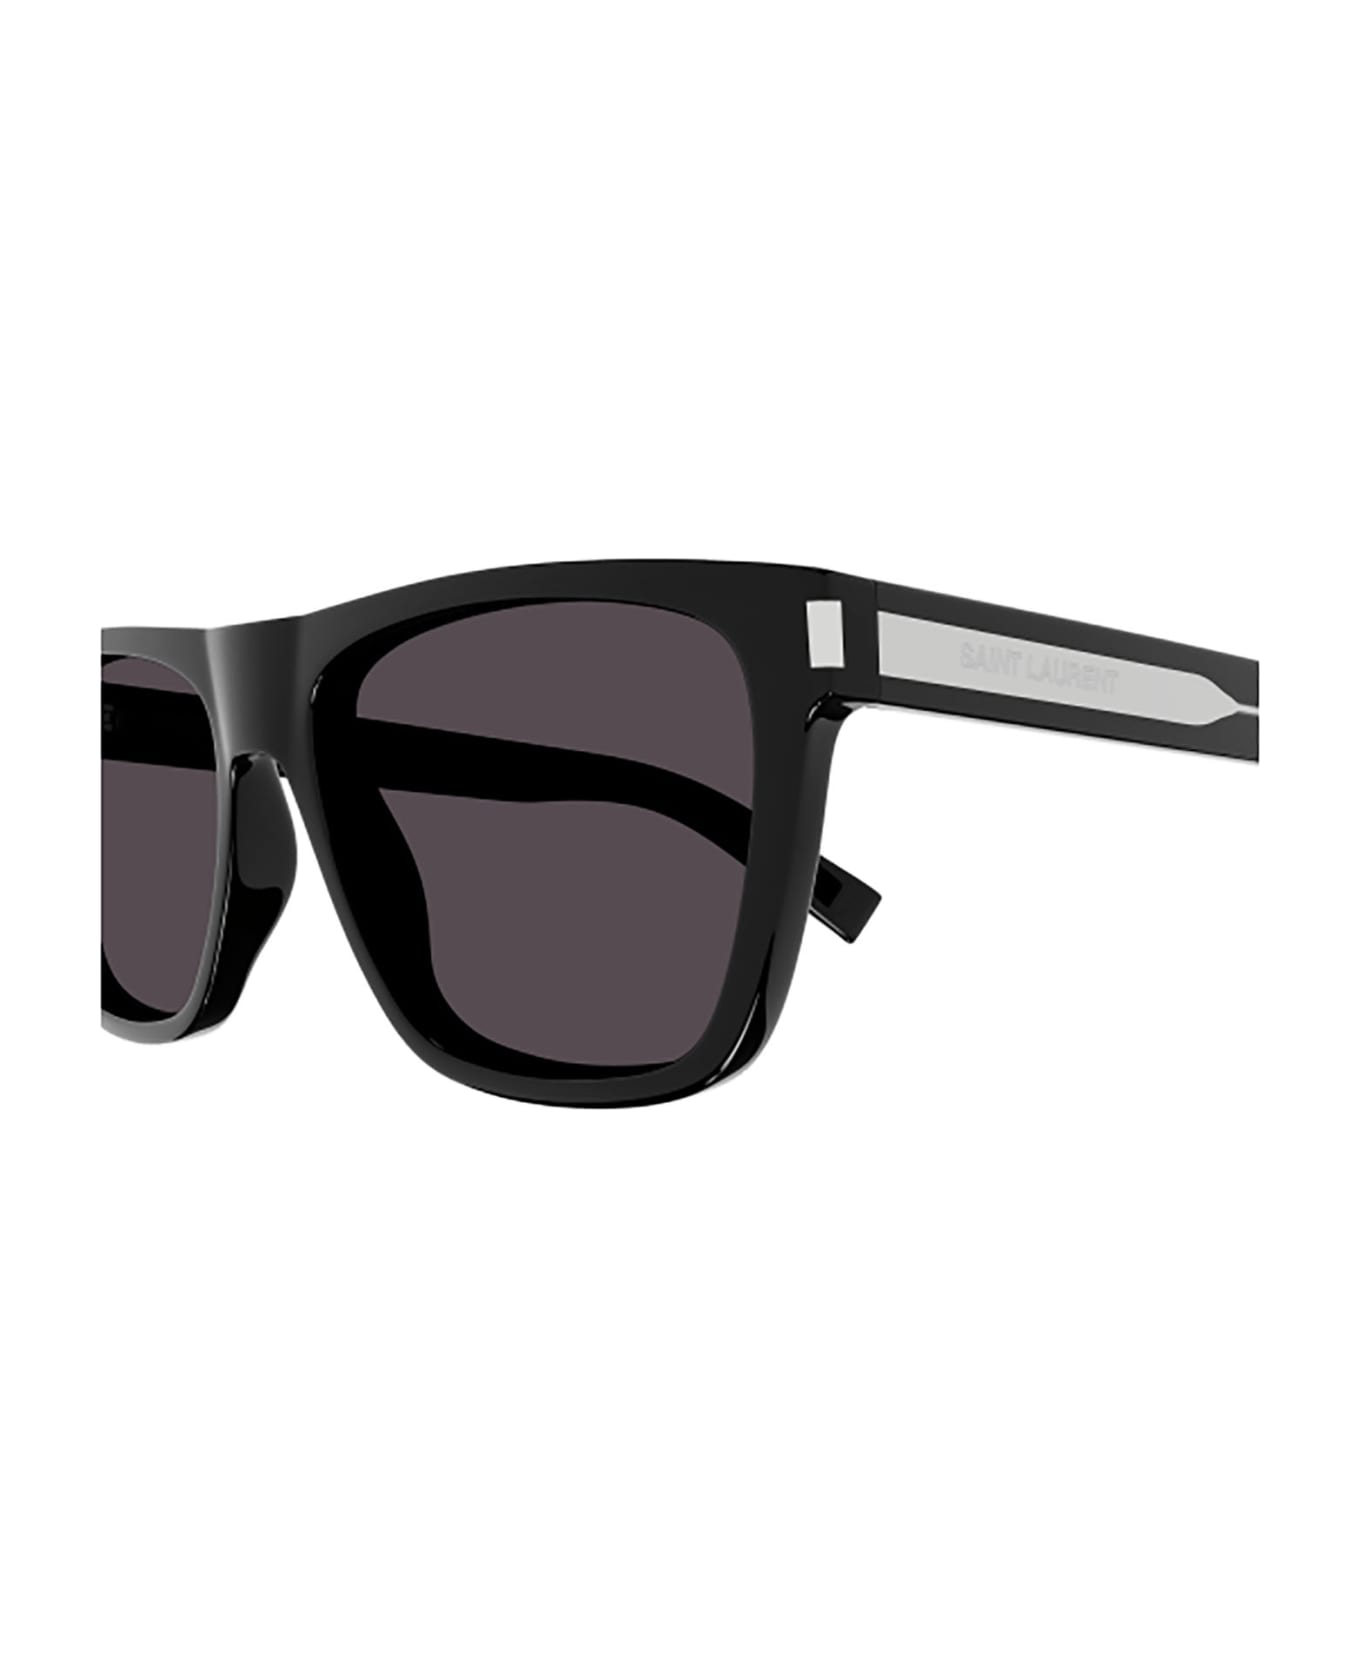 Saint Laurent Eyewear SL 619 Sunglasses - Black Crystal Black